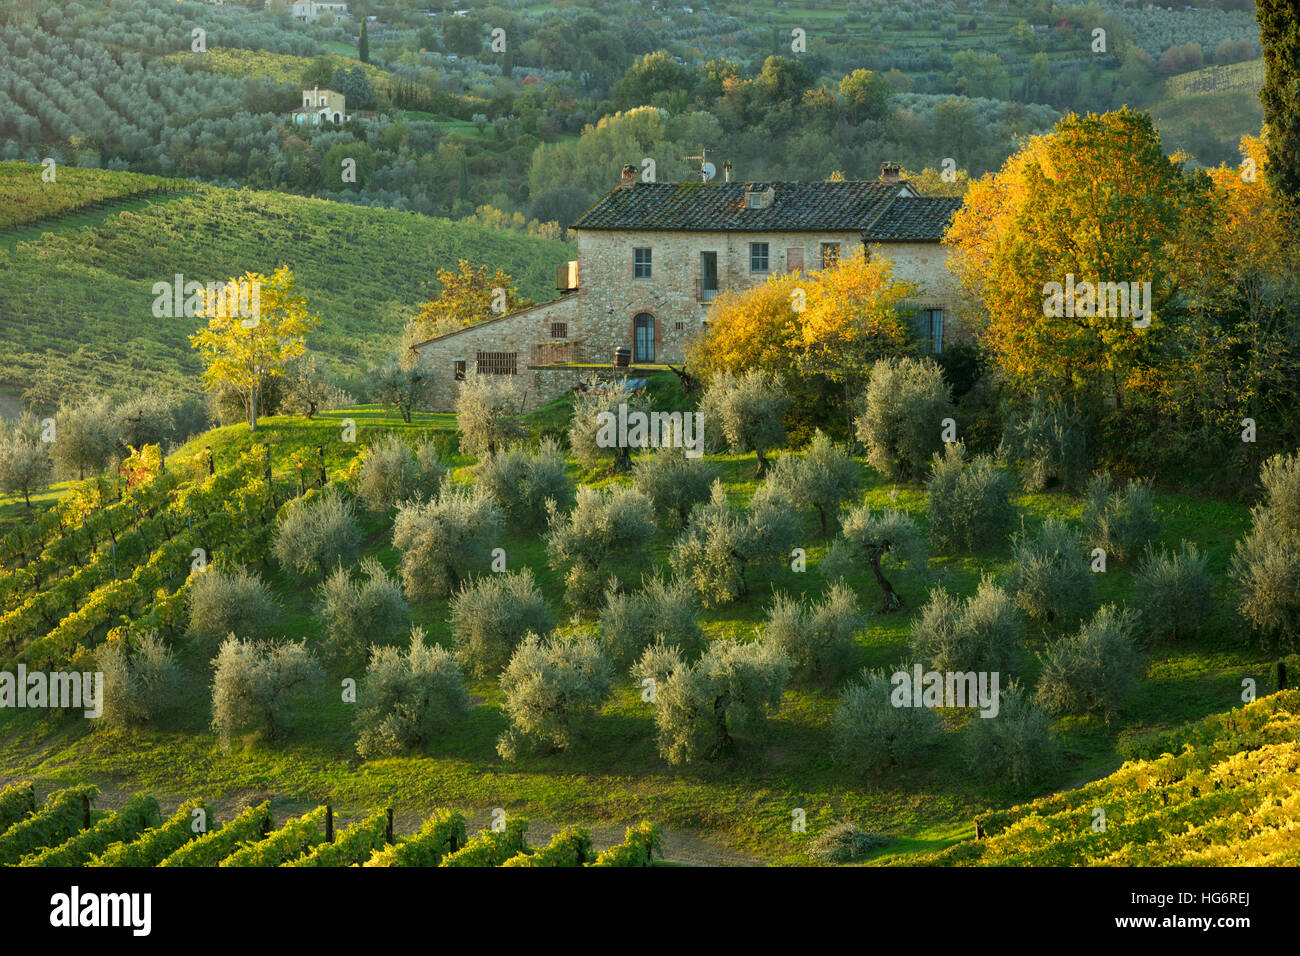 Amanecer en Villa Toscana, viñedo y olivar cerca de San Gimignano, Toscana, Italia Foto de stock